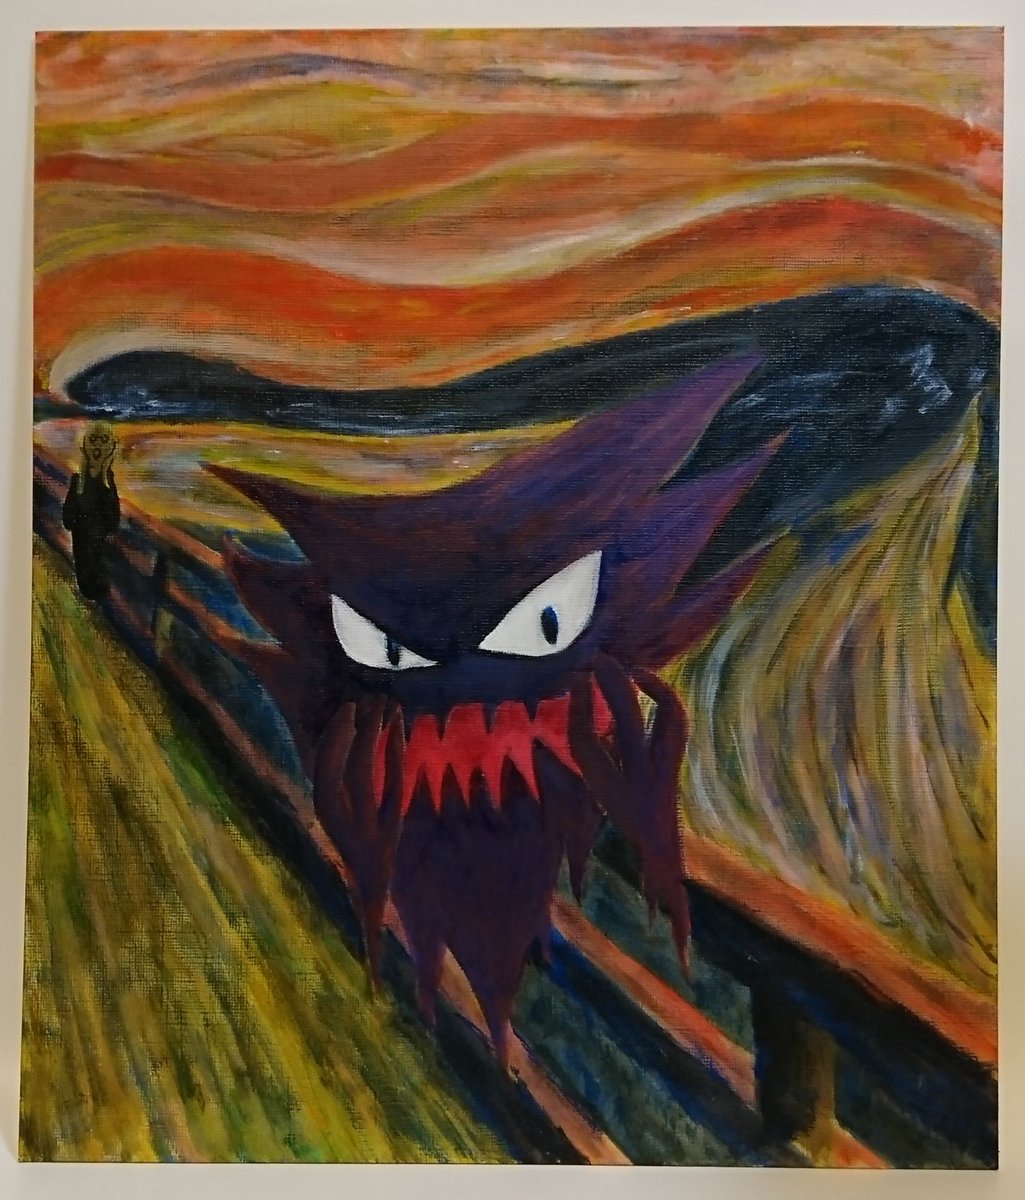 けるばす ムンク展のポケモンコラボに感化されて 叫び をオマージュし ゴーストを主役とした絵を描きました 百年以上も前の作品が時代を超え 私を含めて現代の人々に影響を与えていると思うと 感慨深い気持ちになります ムンク ムンク展 ムンク